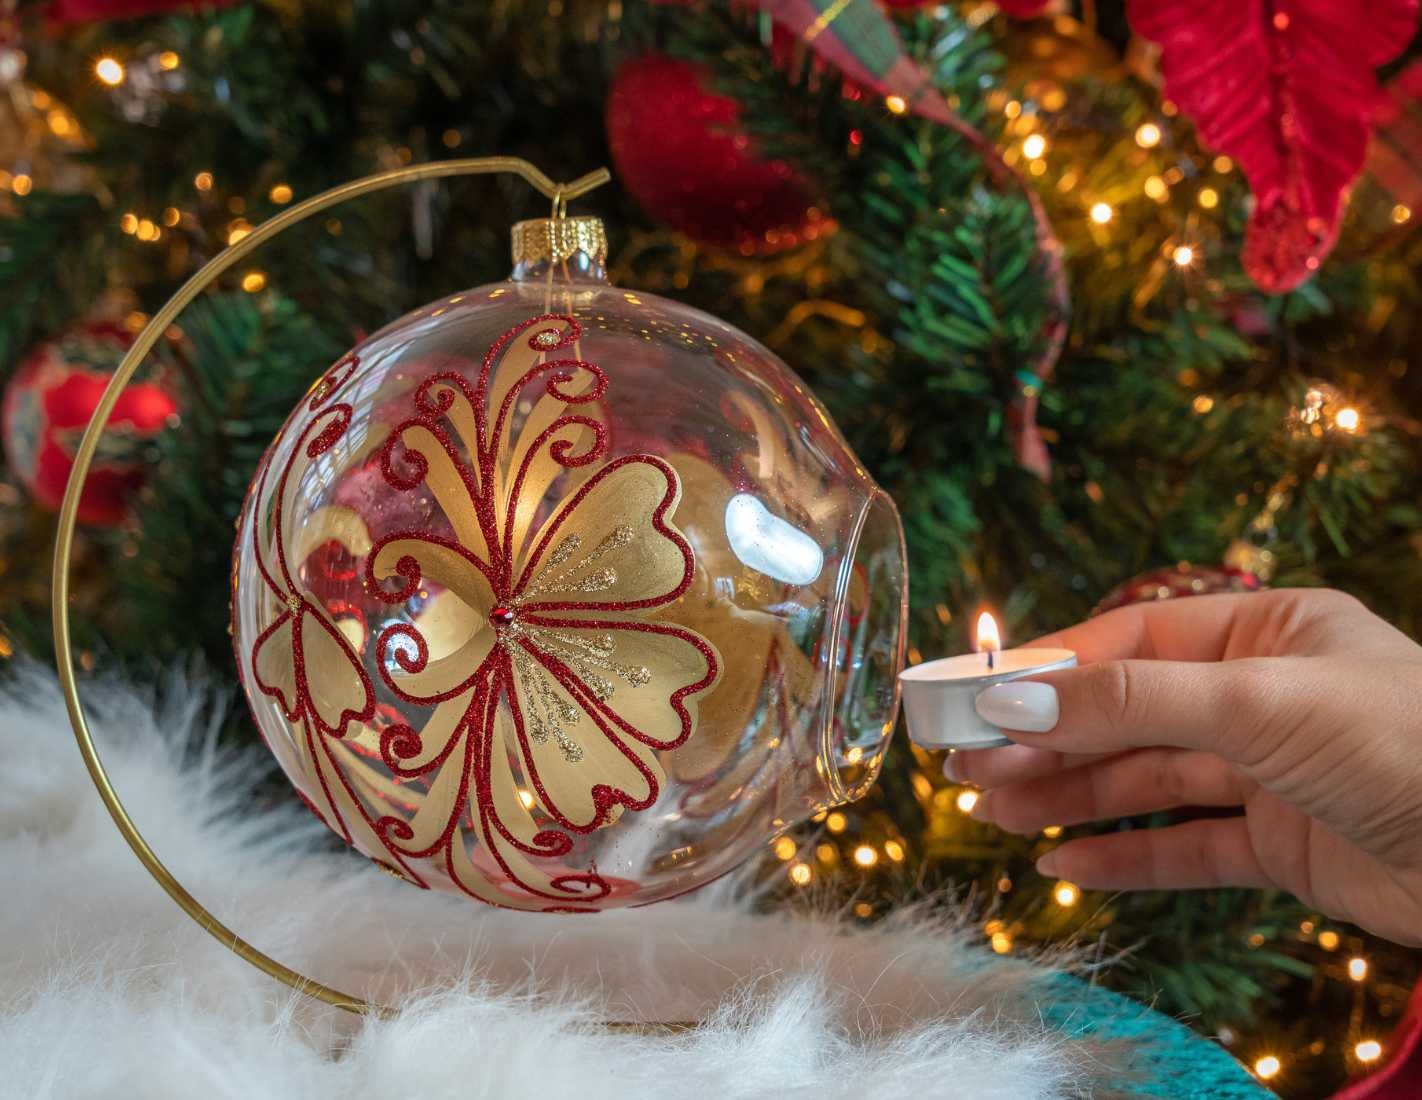 Gobelet personnalisé design de Noël décor renne & flocons